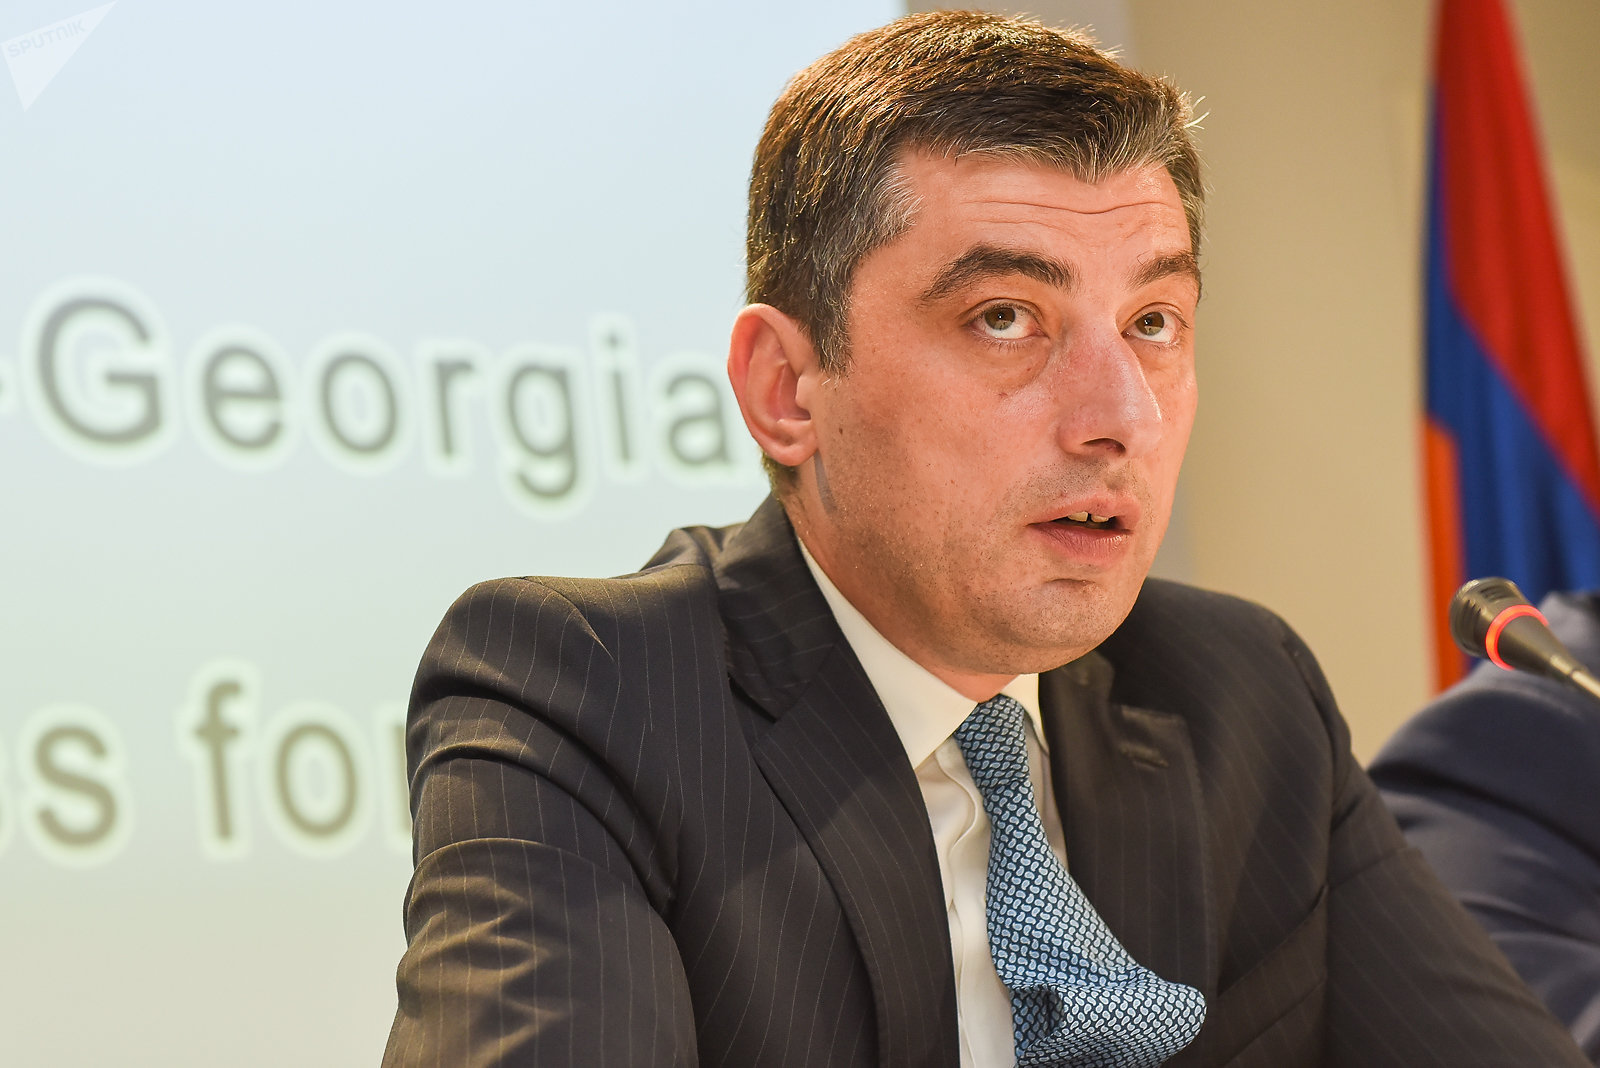 Кандидат в премьеры Грузии Гахария выступил за интеграцию в ЕС и НАТО